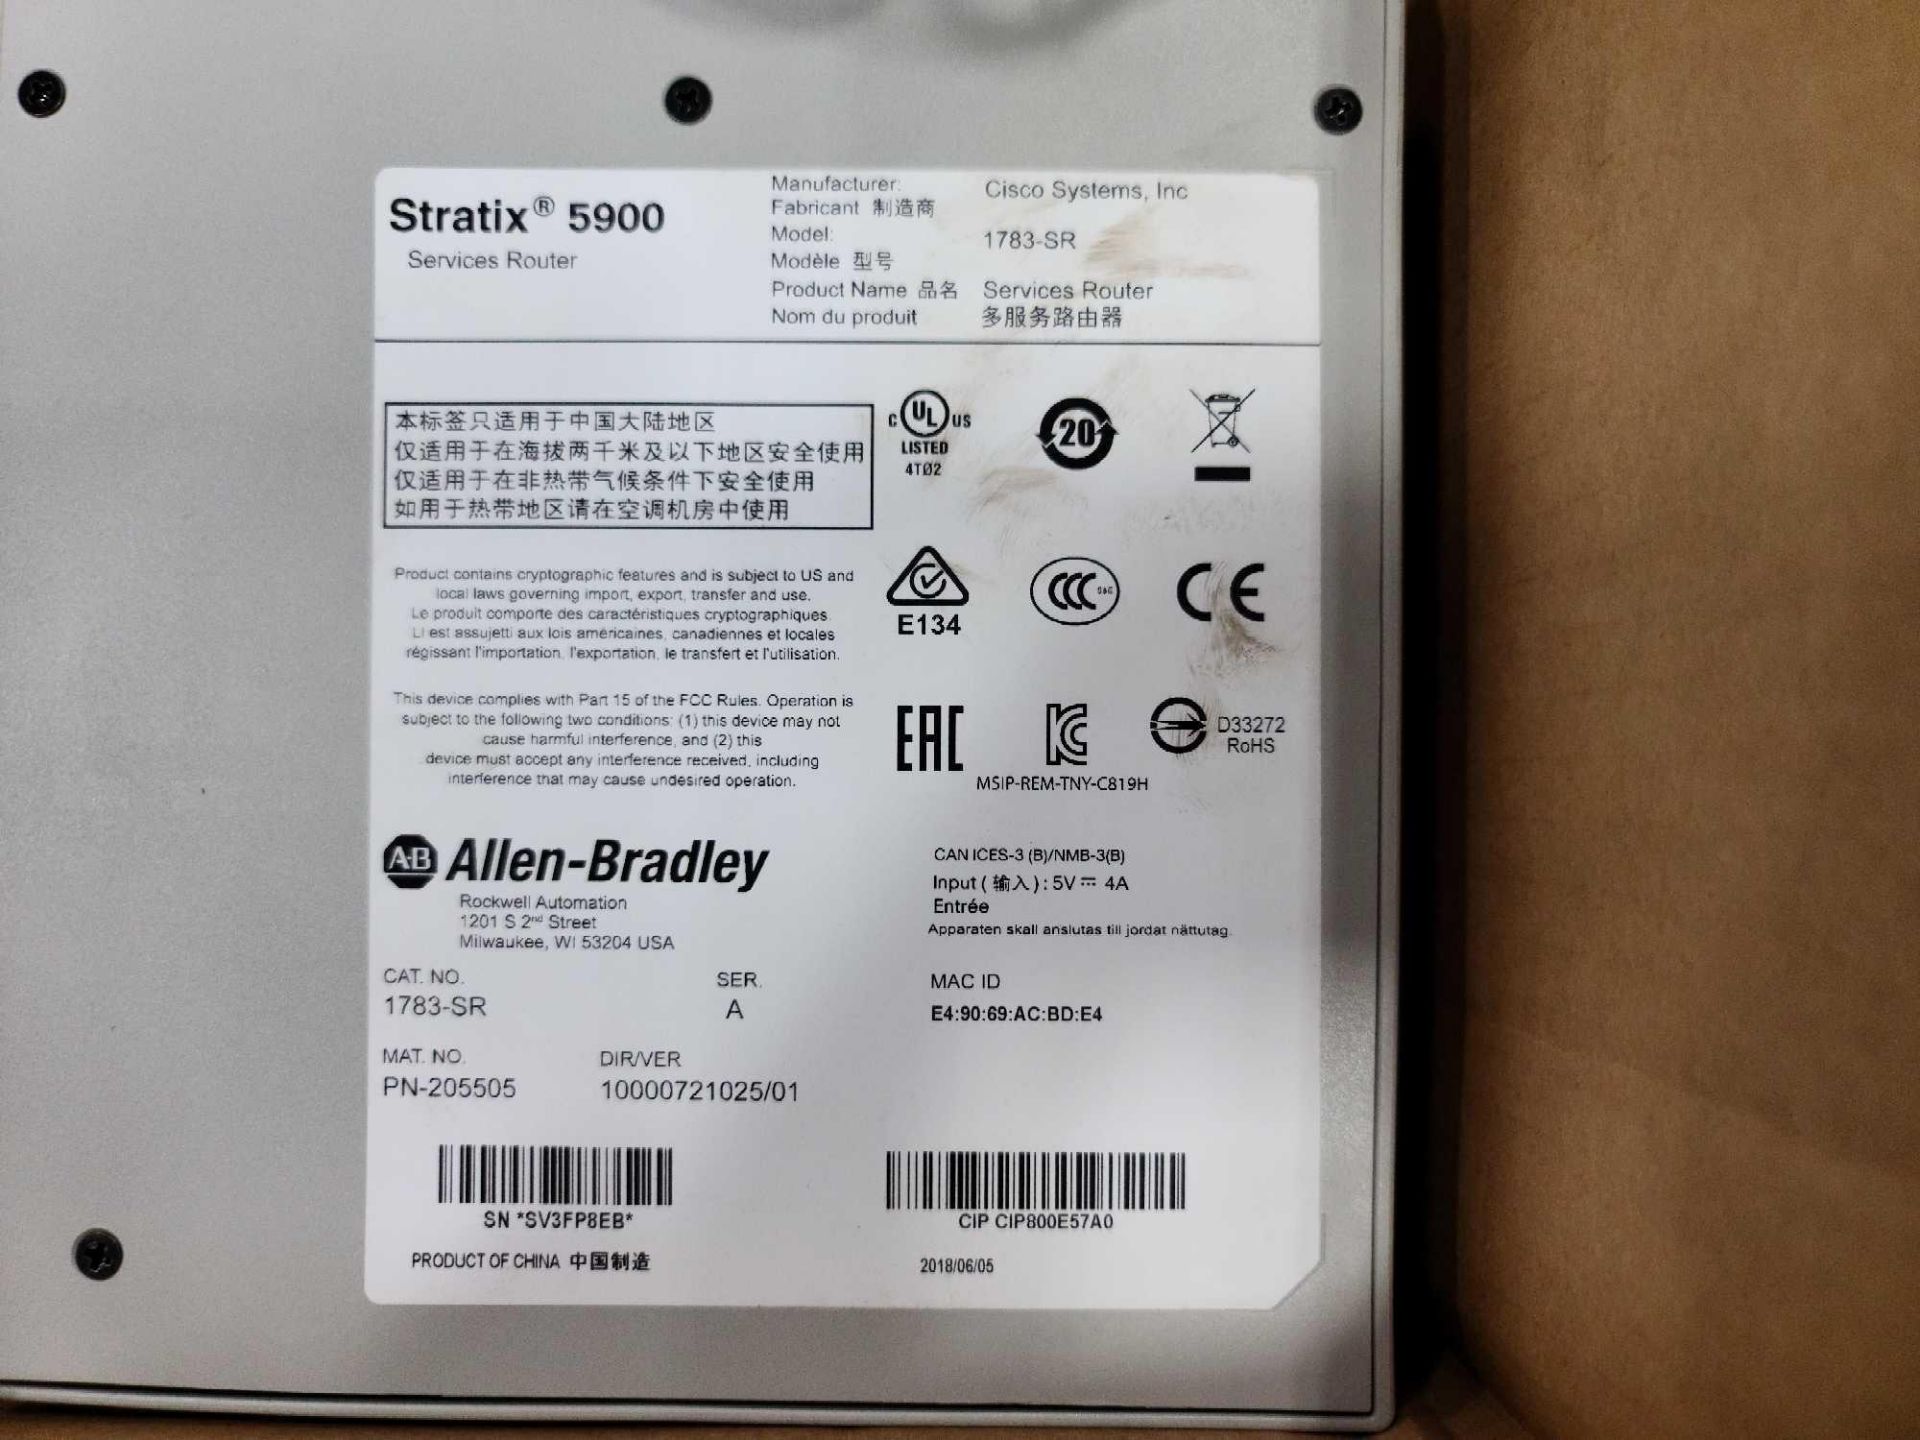 Allen-Bradley 1783-SR Stratix 5900 Services Router 4FE 1GE - Image 3 of 3